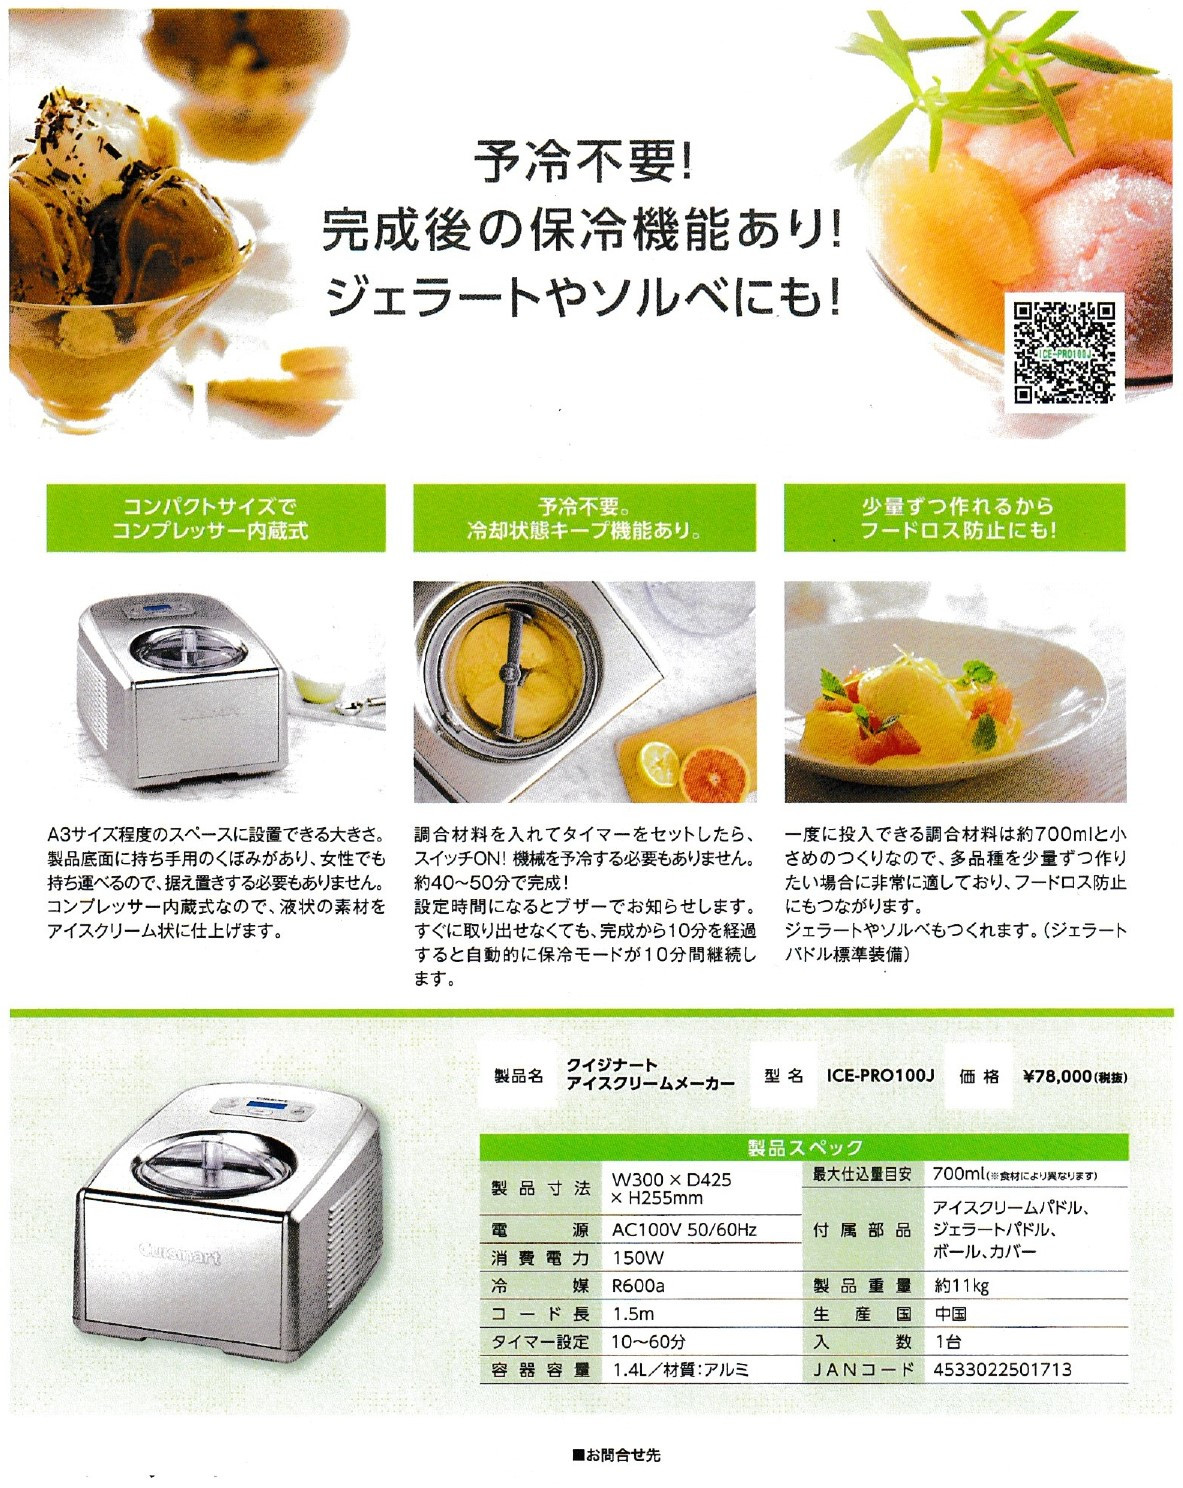  Япония внутренний стандартный импортные товары ki Sinar to(Cuisinart) мороженое механизм изготовитель мороженого ICE-PRO100J